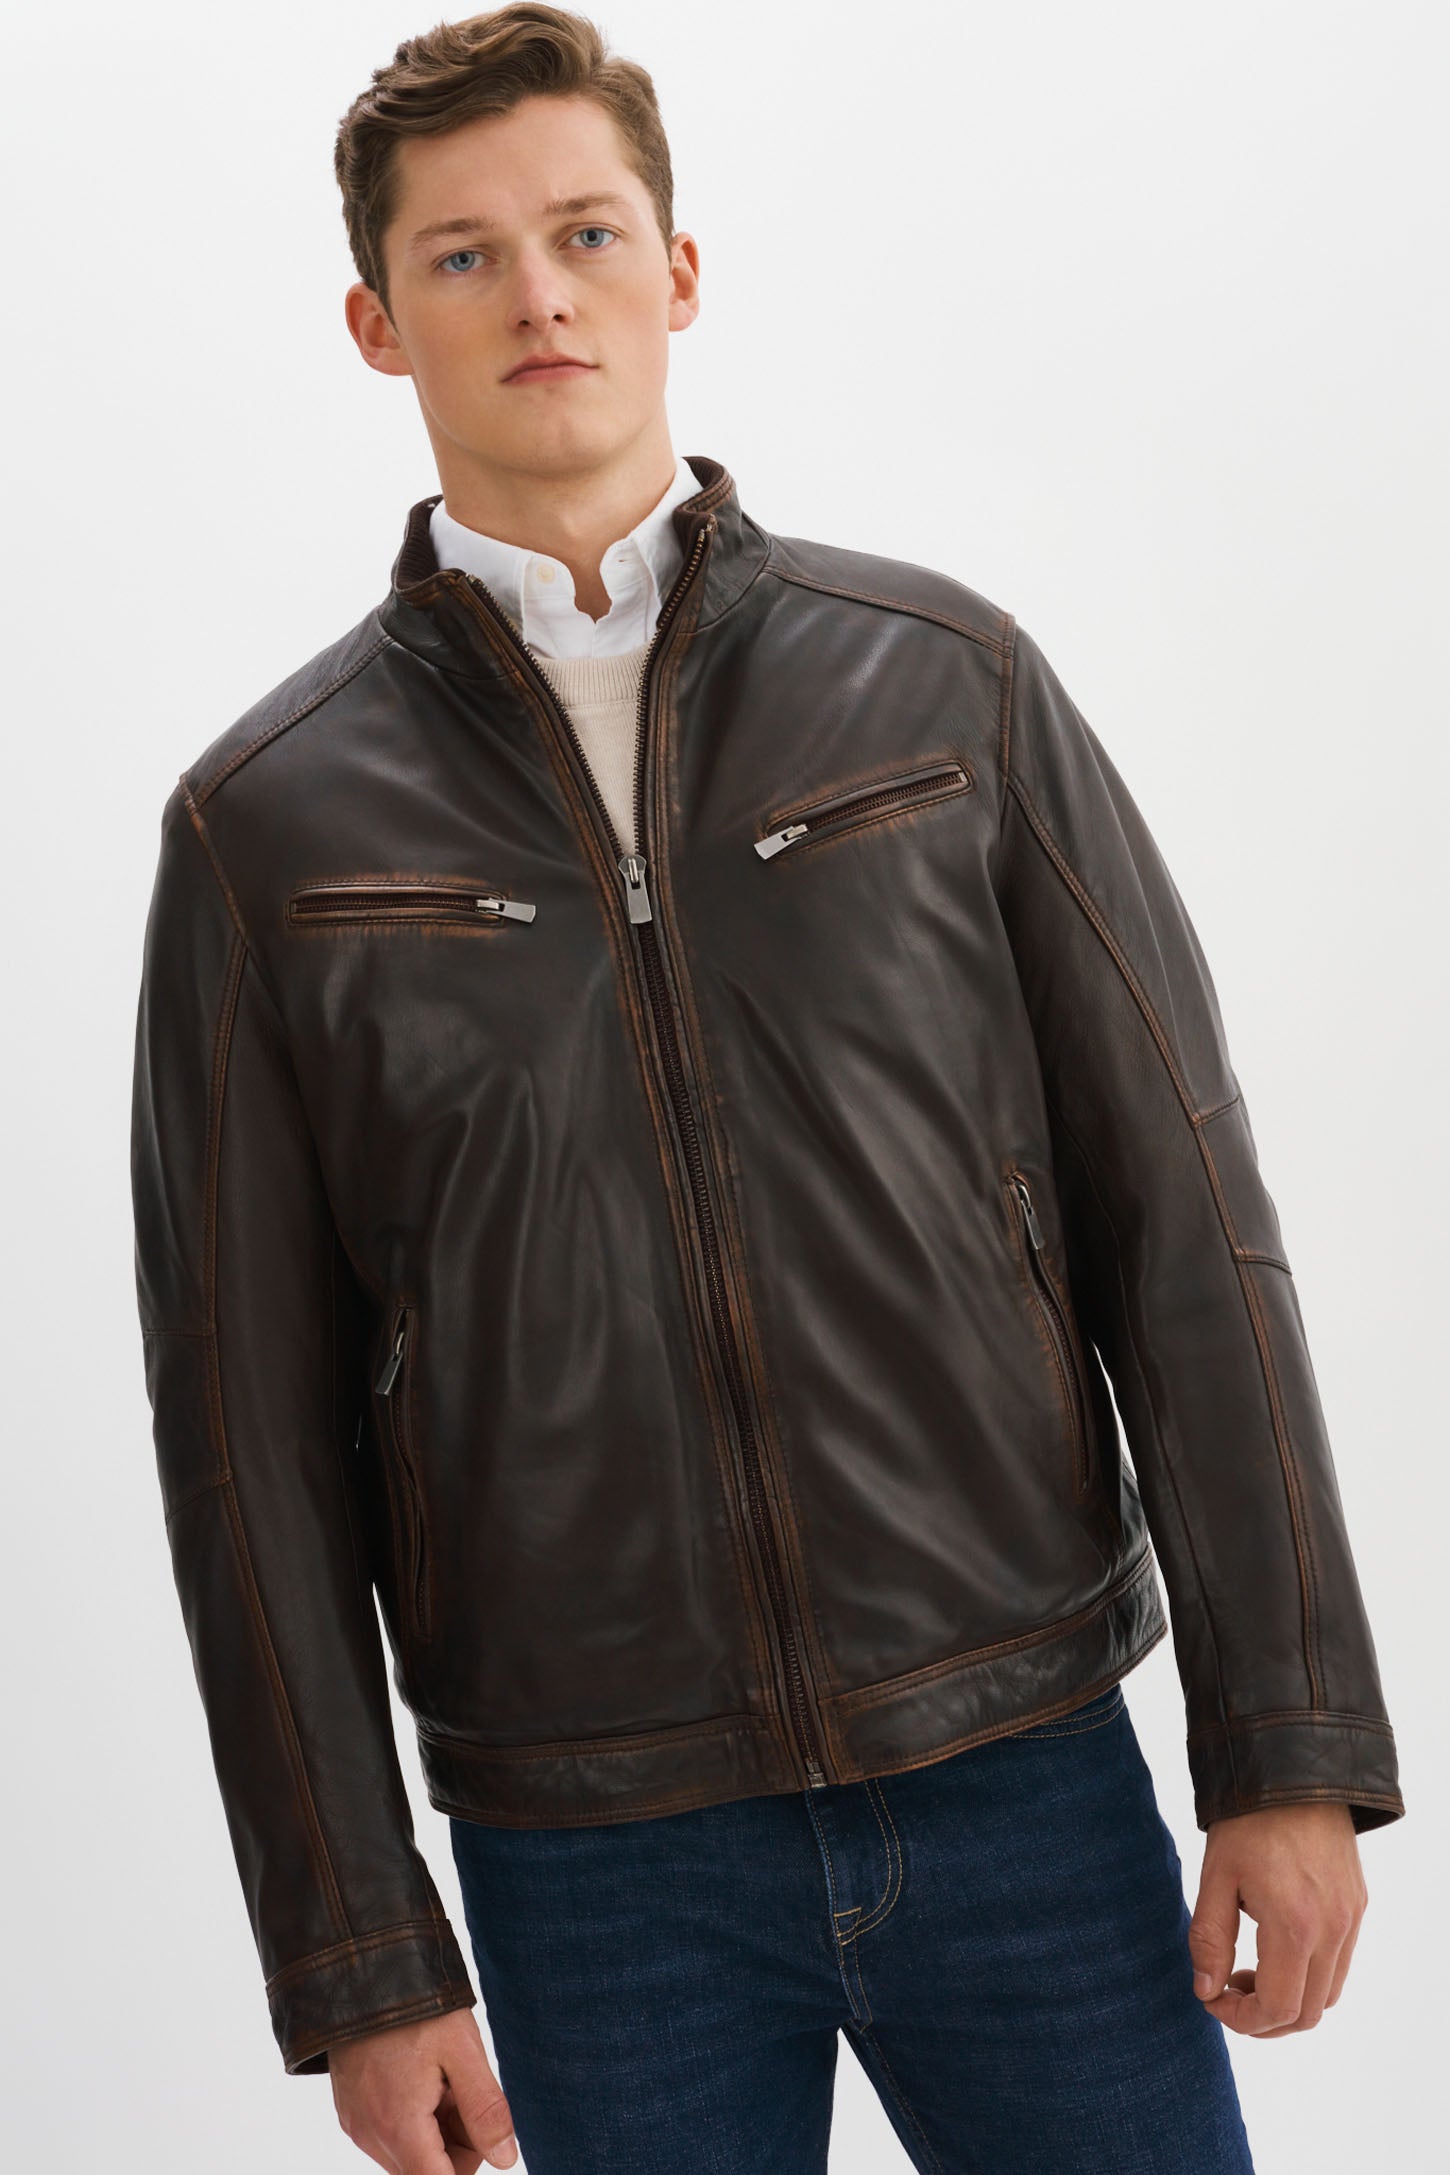 GUNNER-V Distressed Leather Jacket – REGENCY Leathers